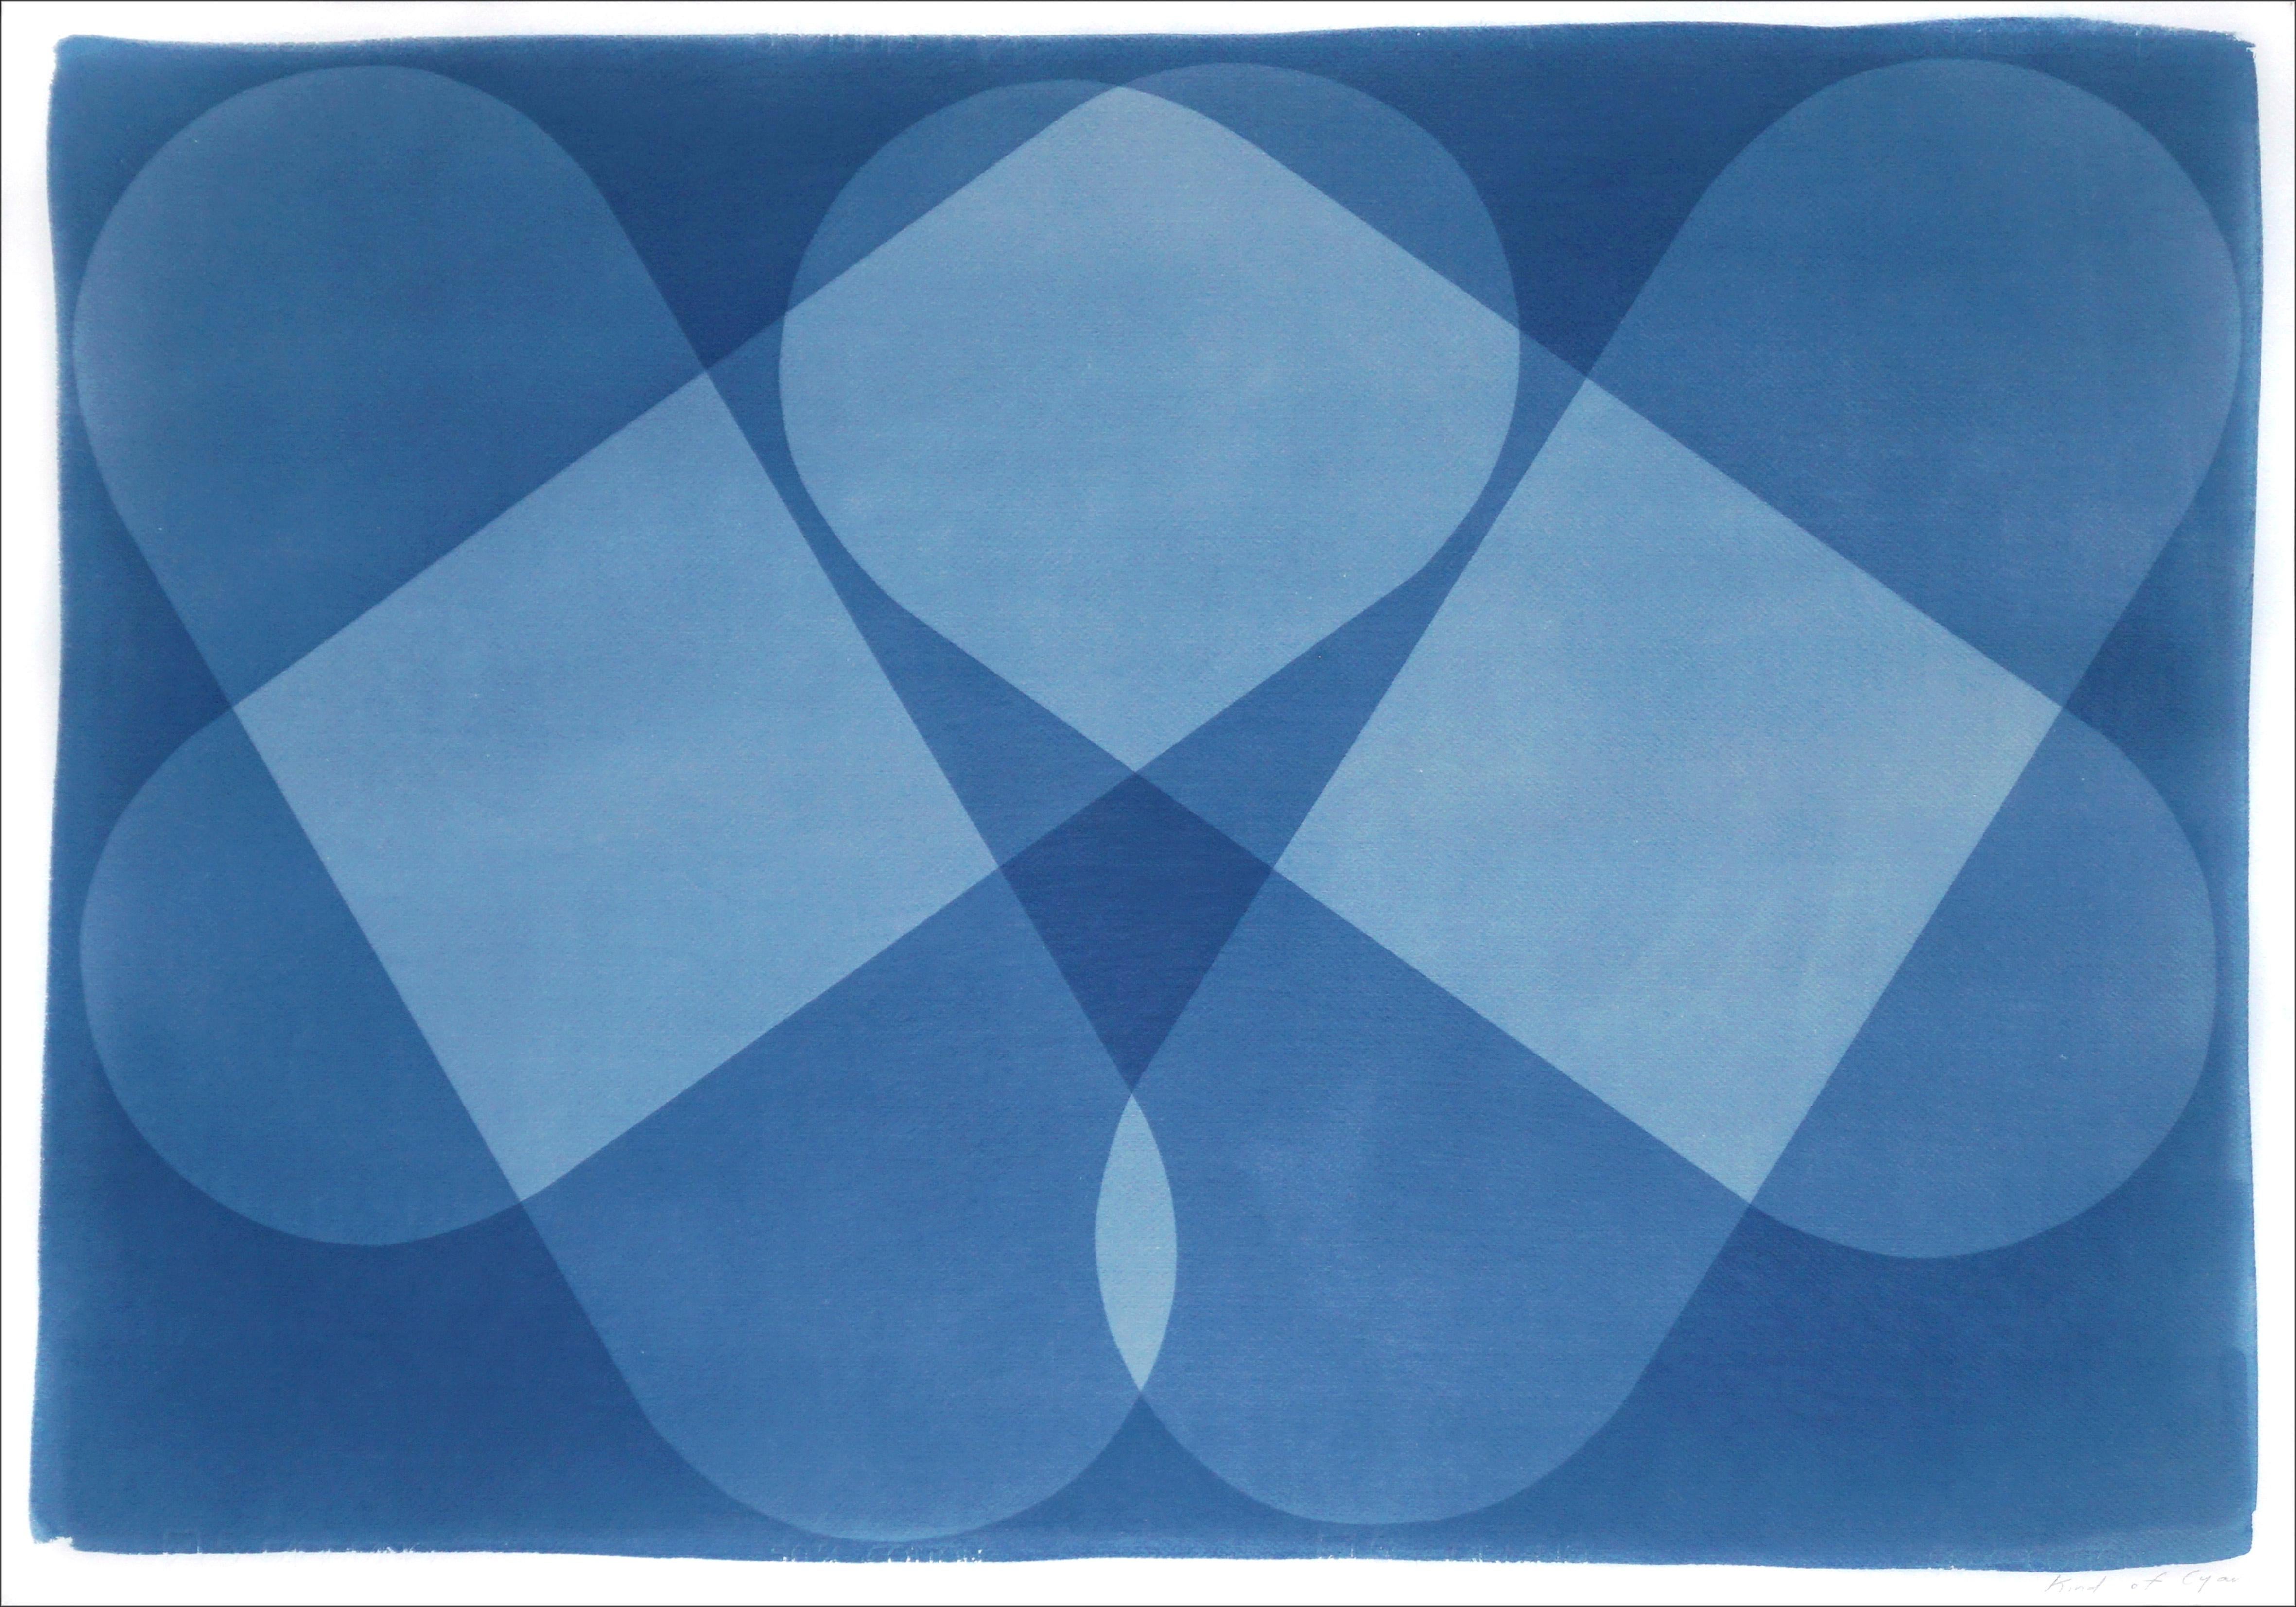 Kind of Cyan Abstract Photograph – Symmetricische Ikone, Blaue Farbblöcke, Abstrakte Gebäude, einzigartige Cyanotypie, Papier